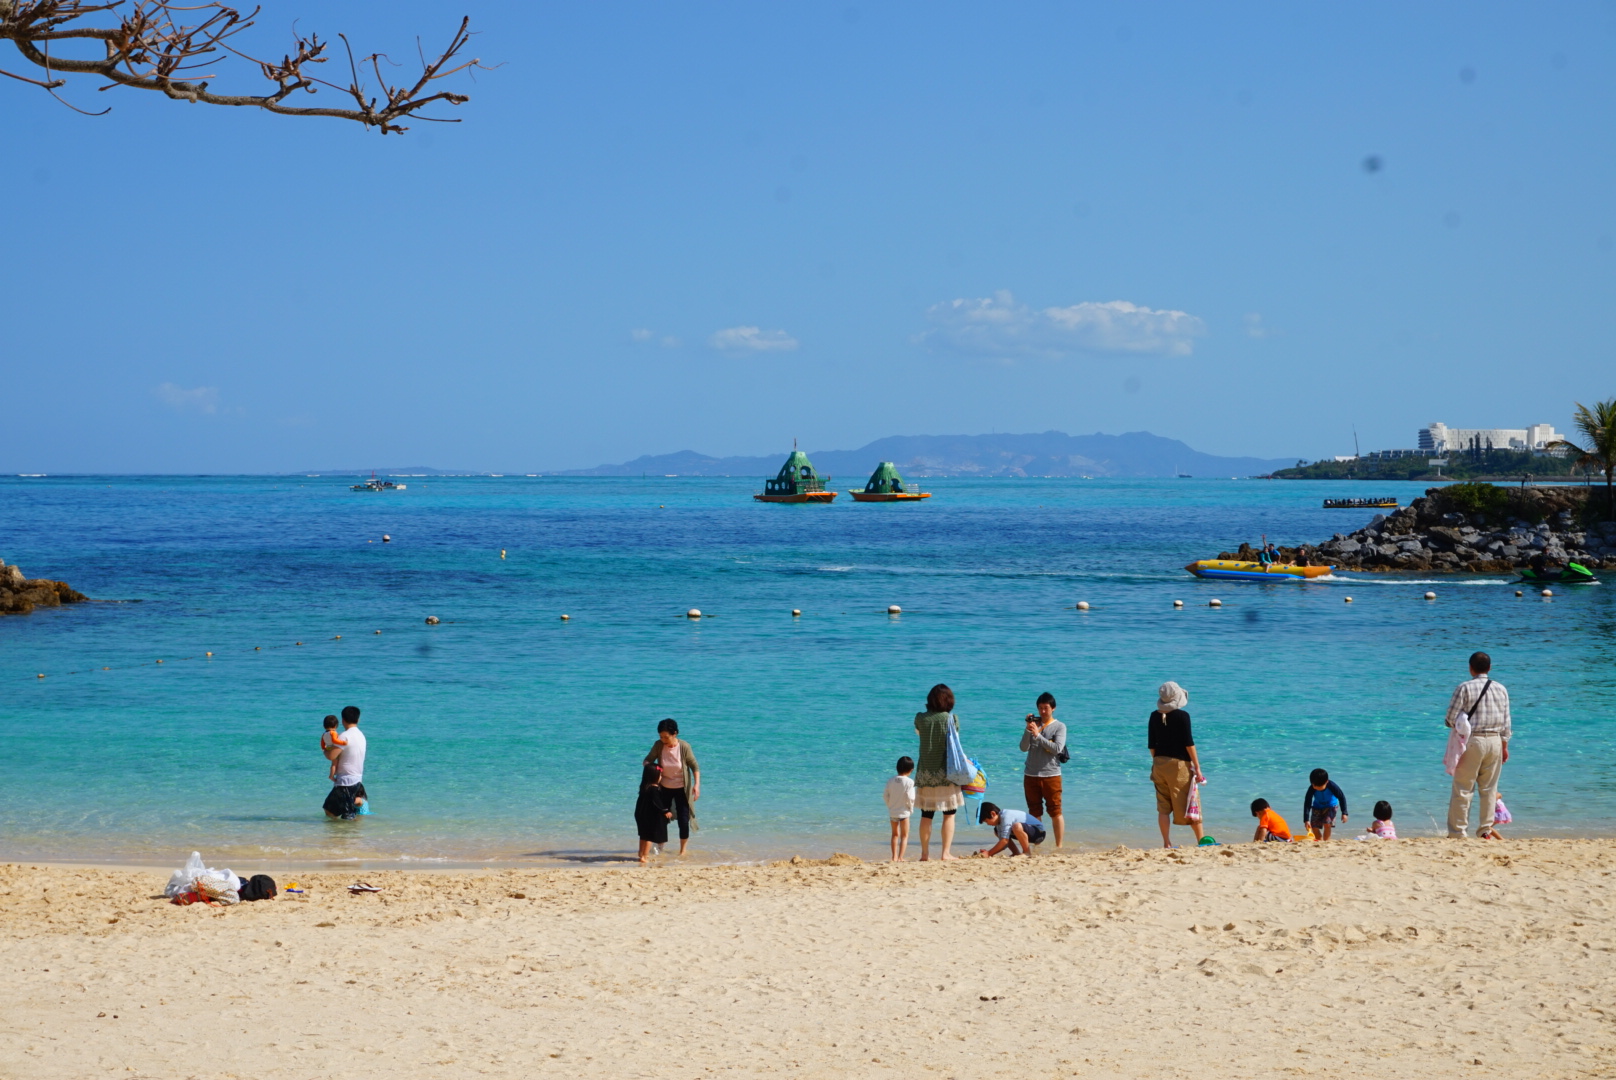 Giới thiệu chung về Okinawa - Tất tần tật về du lịch Okinawa